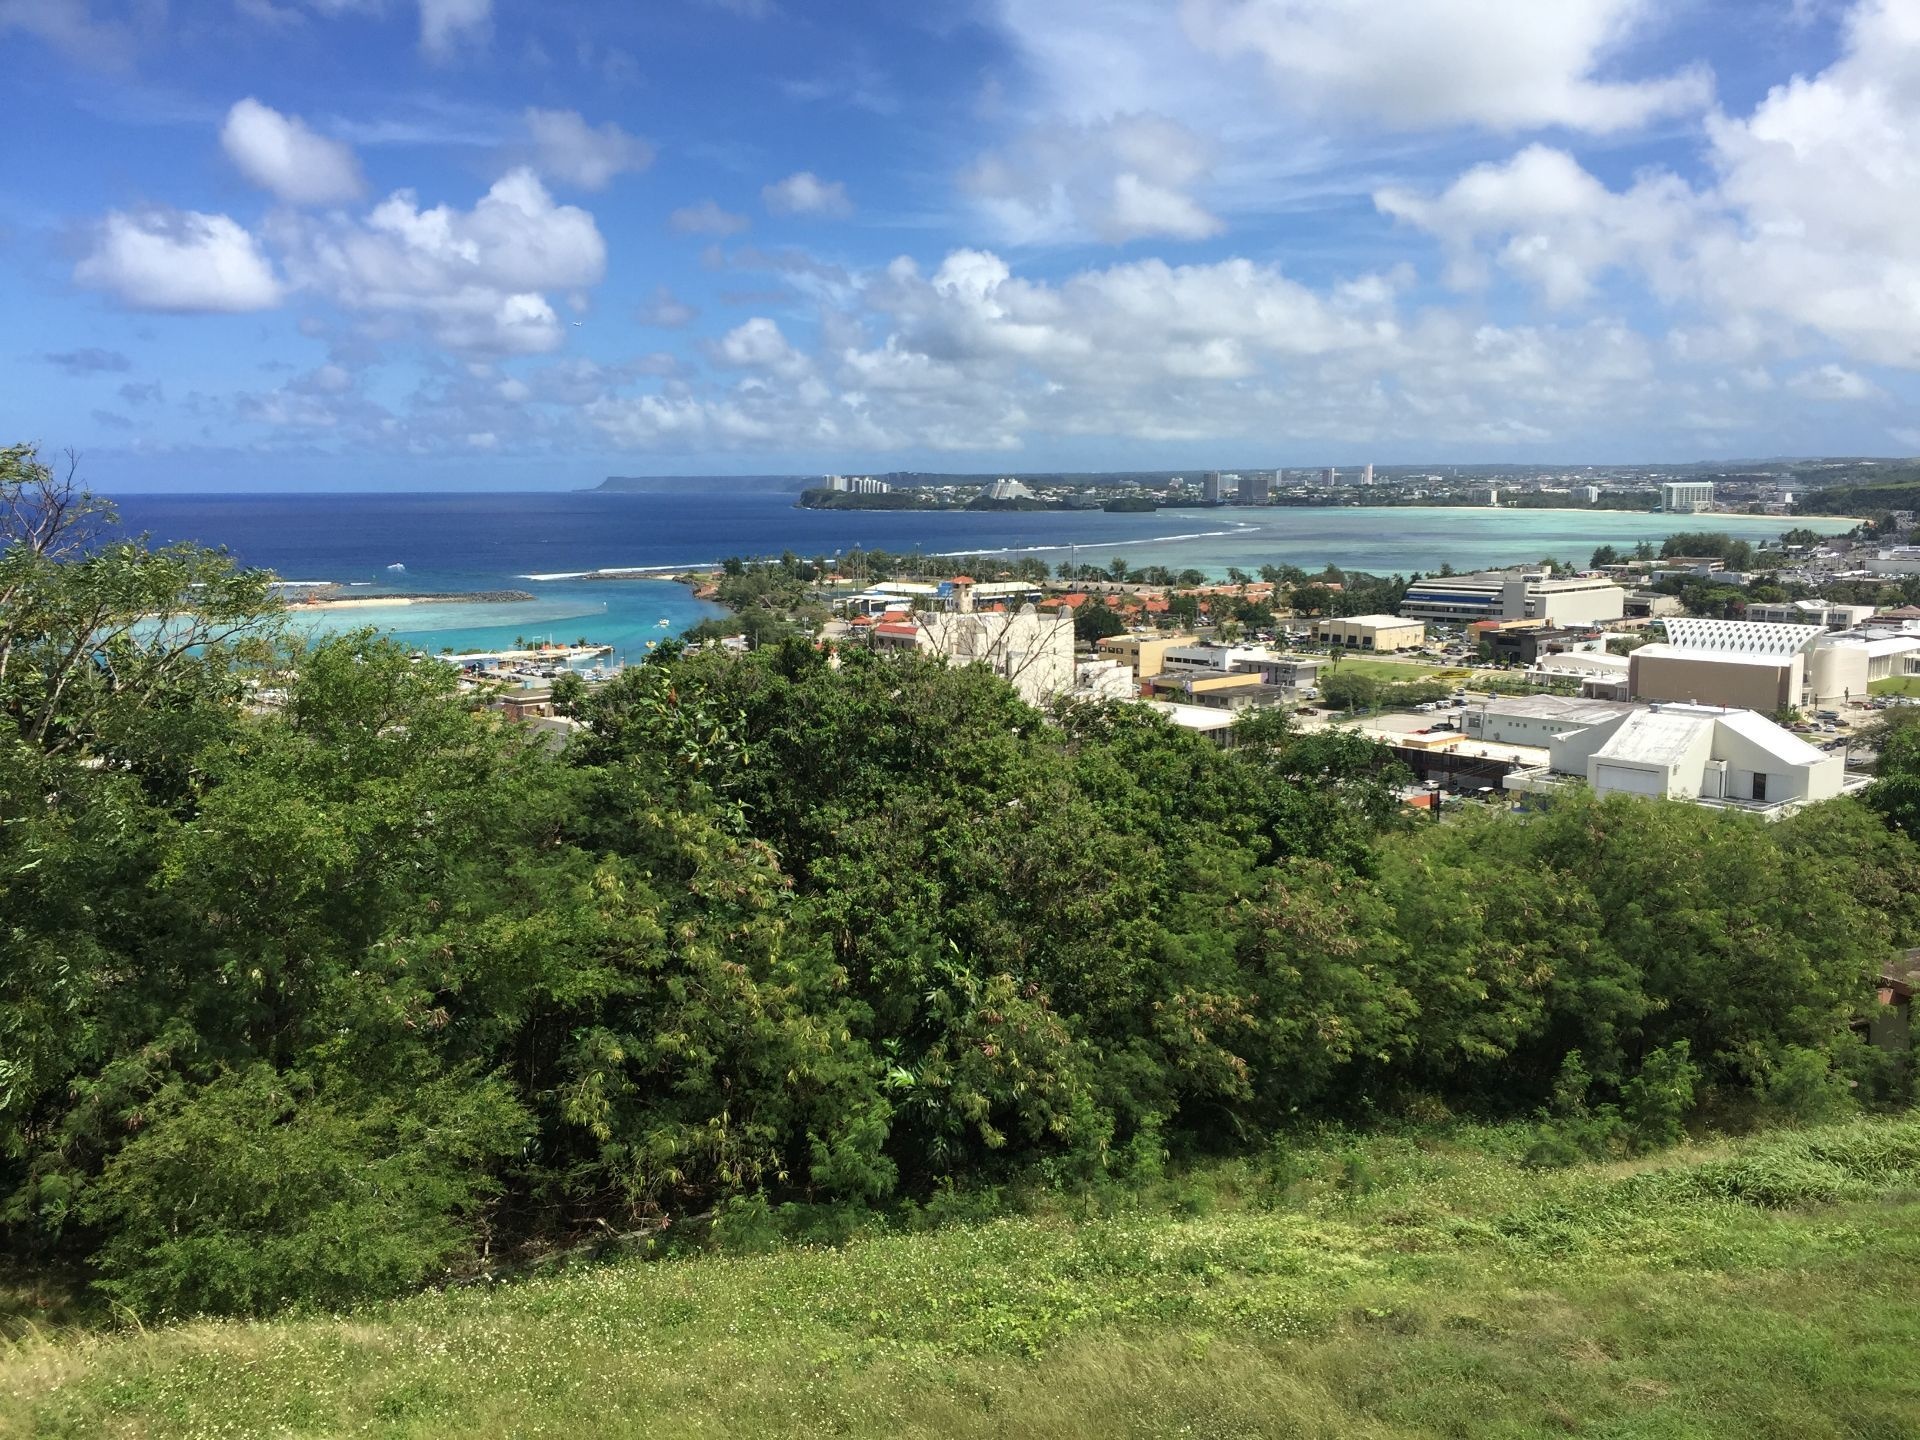 Hagatna, Guam, Fort Apugan, 1920x1440 HD Desktop